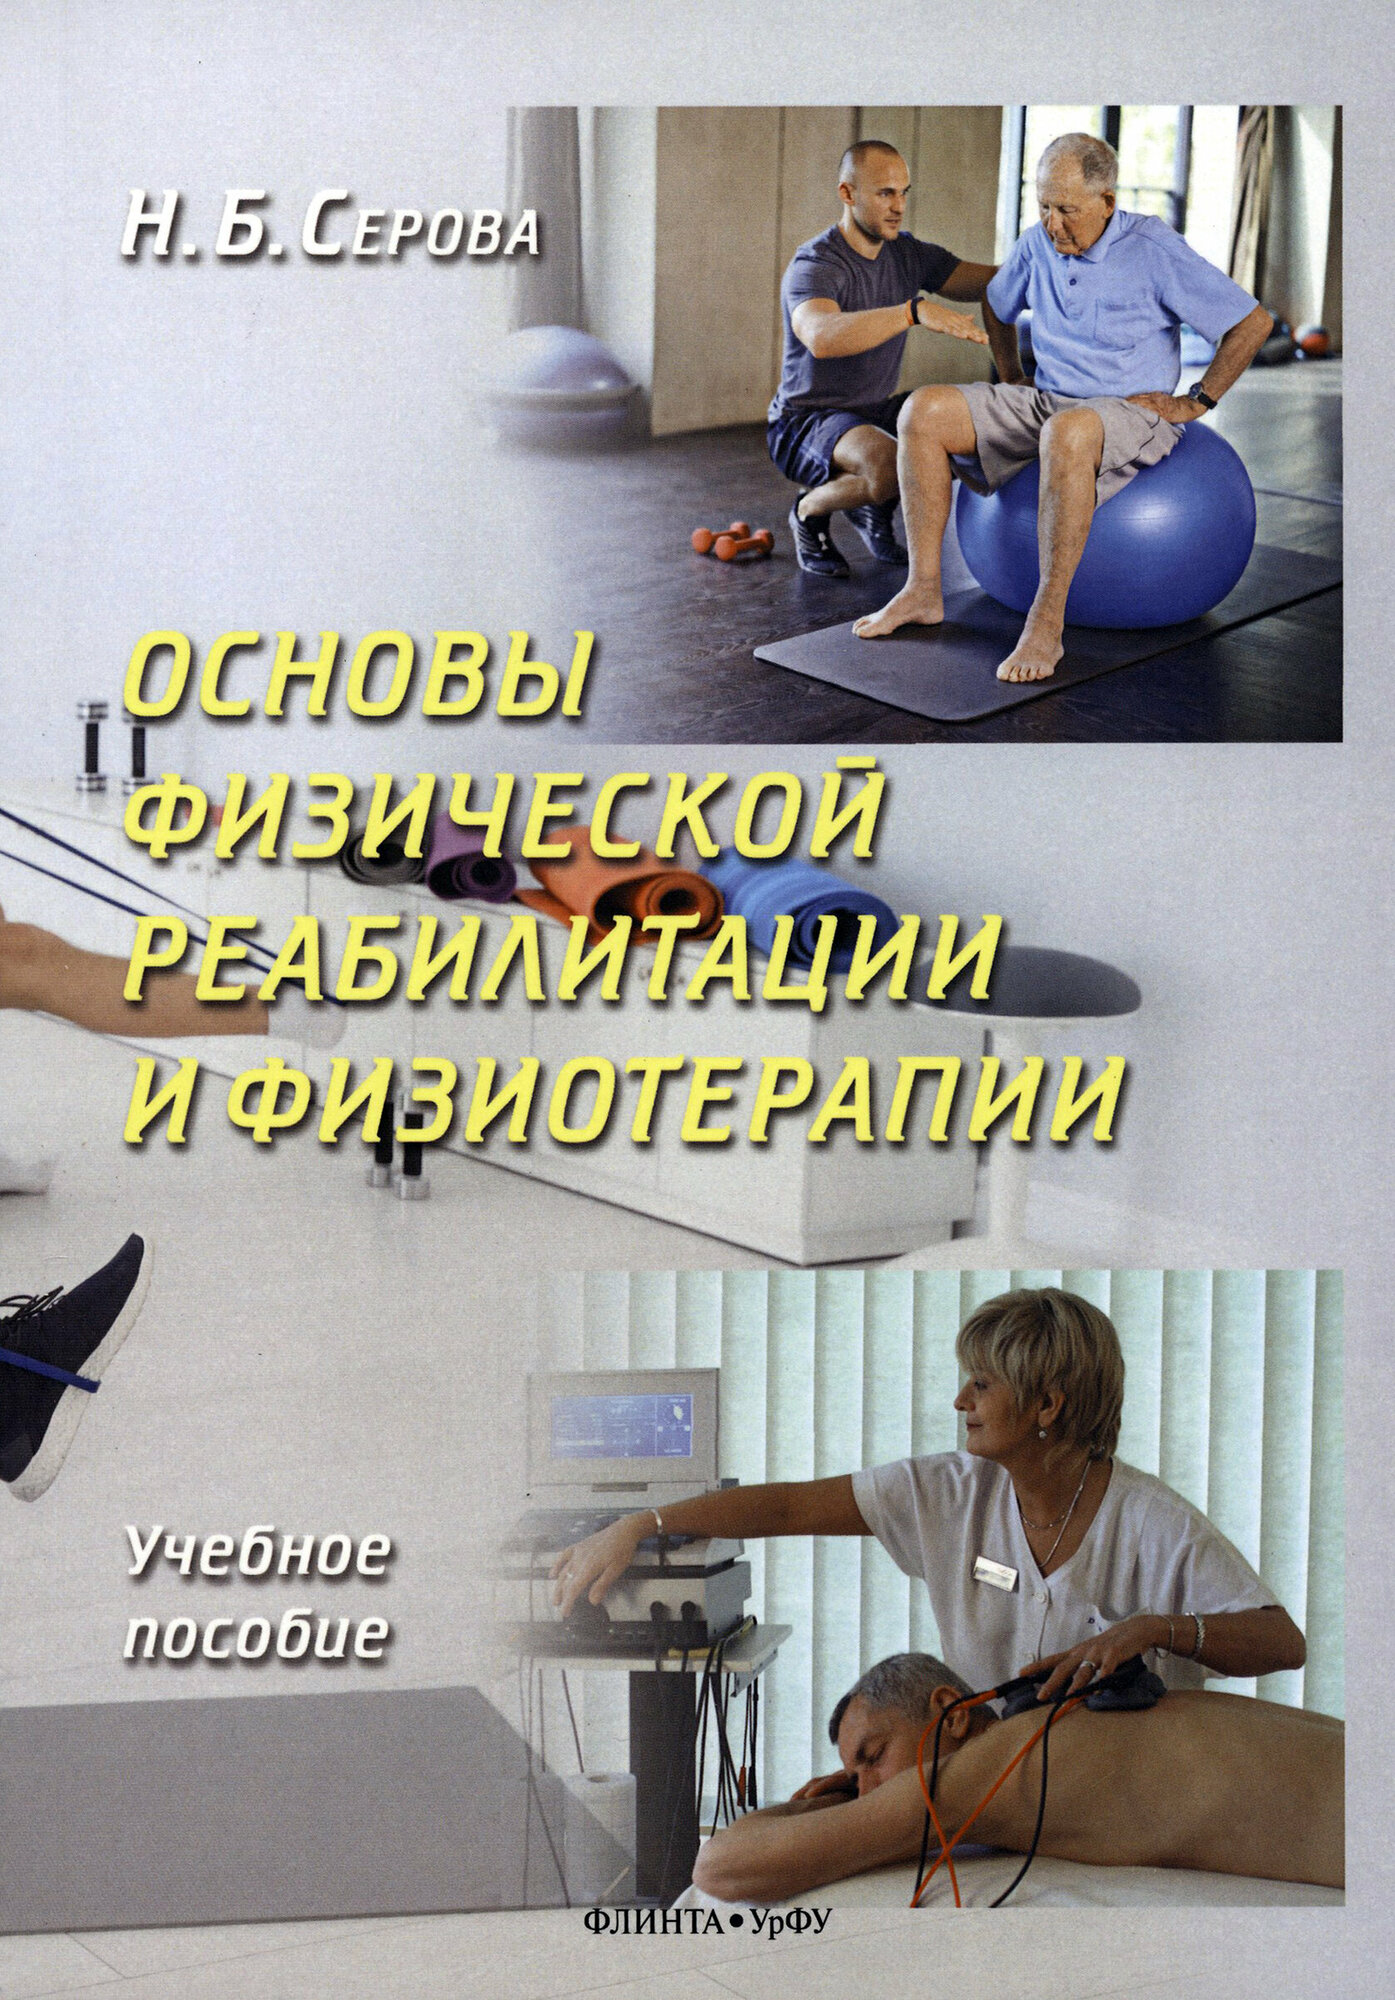 Основы физической реабилитации и физиотерапии - фото №2